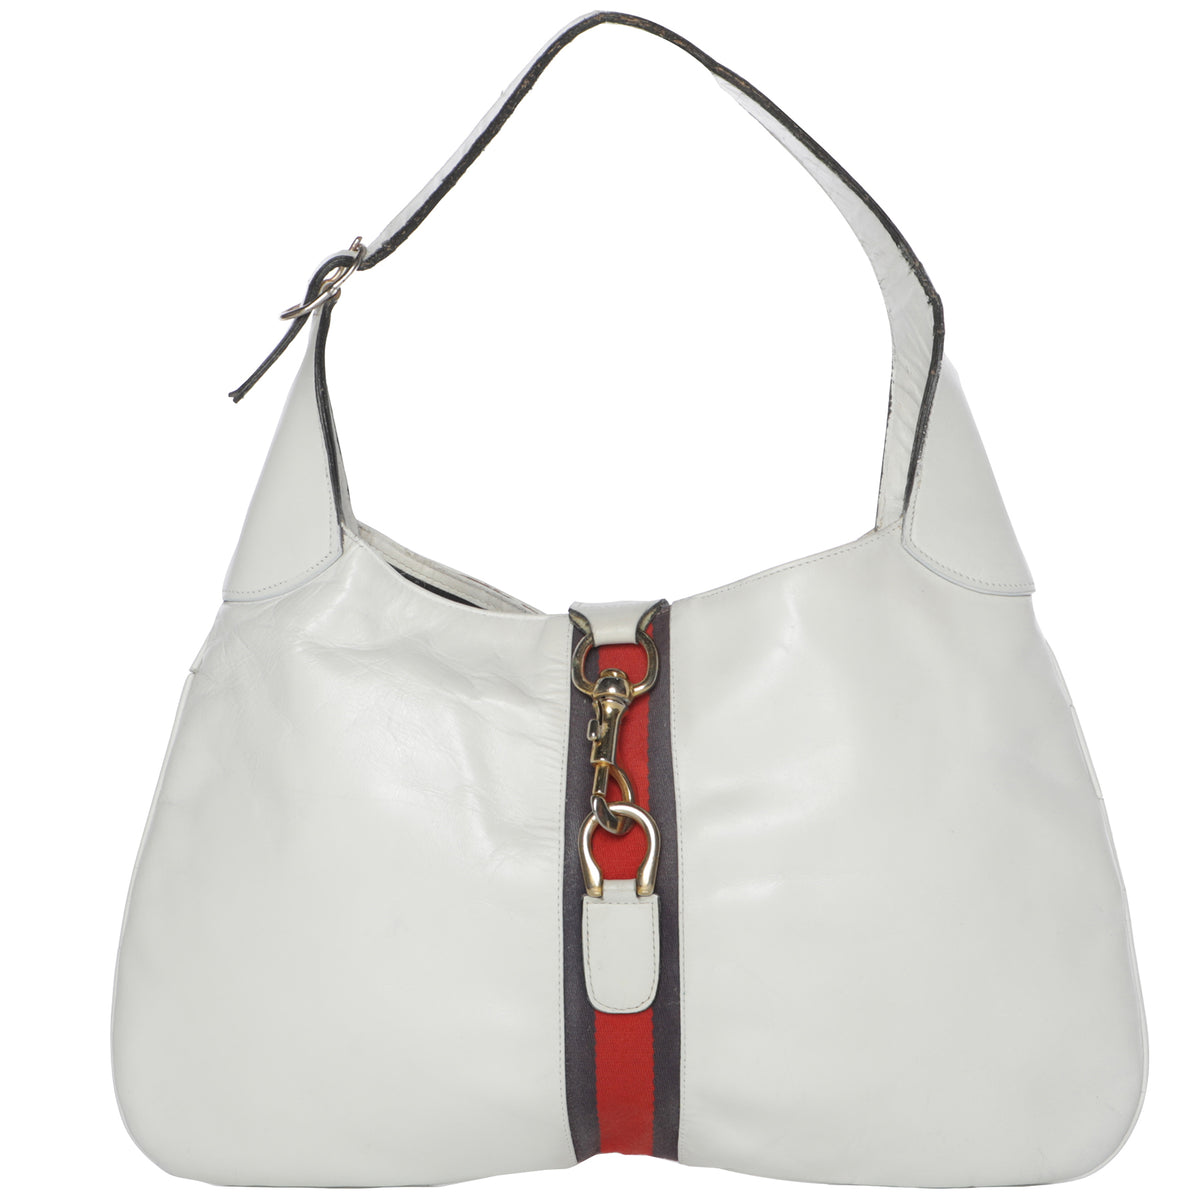 Vintage Gucci Jackie 1961 Leather Handbag 